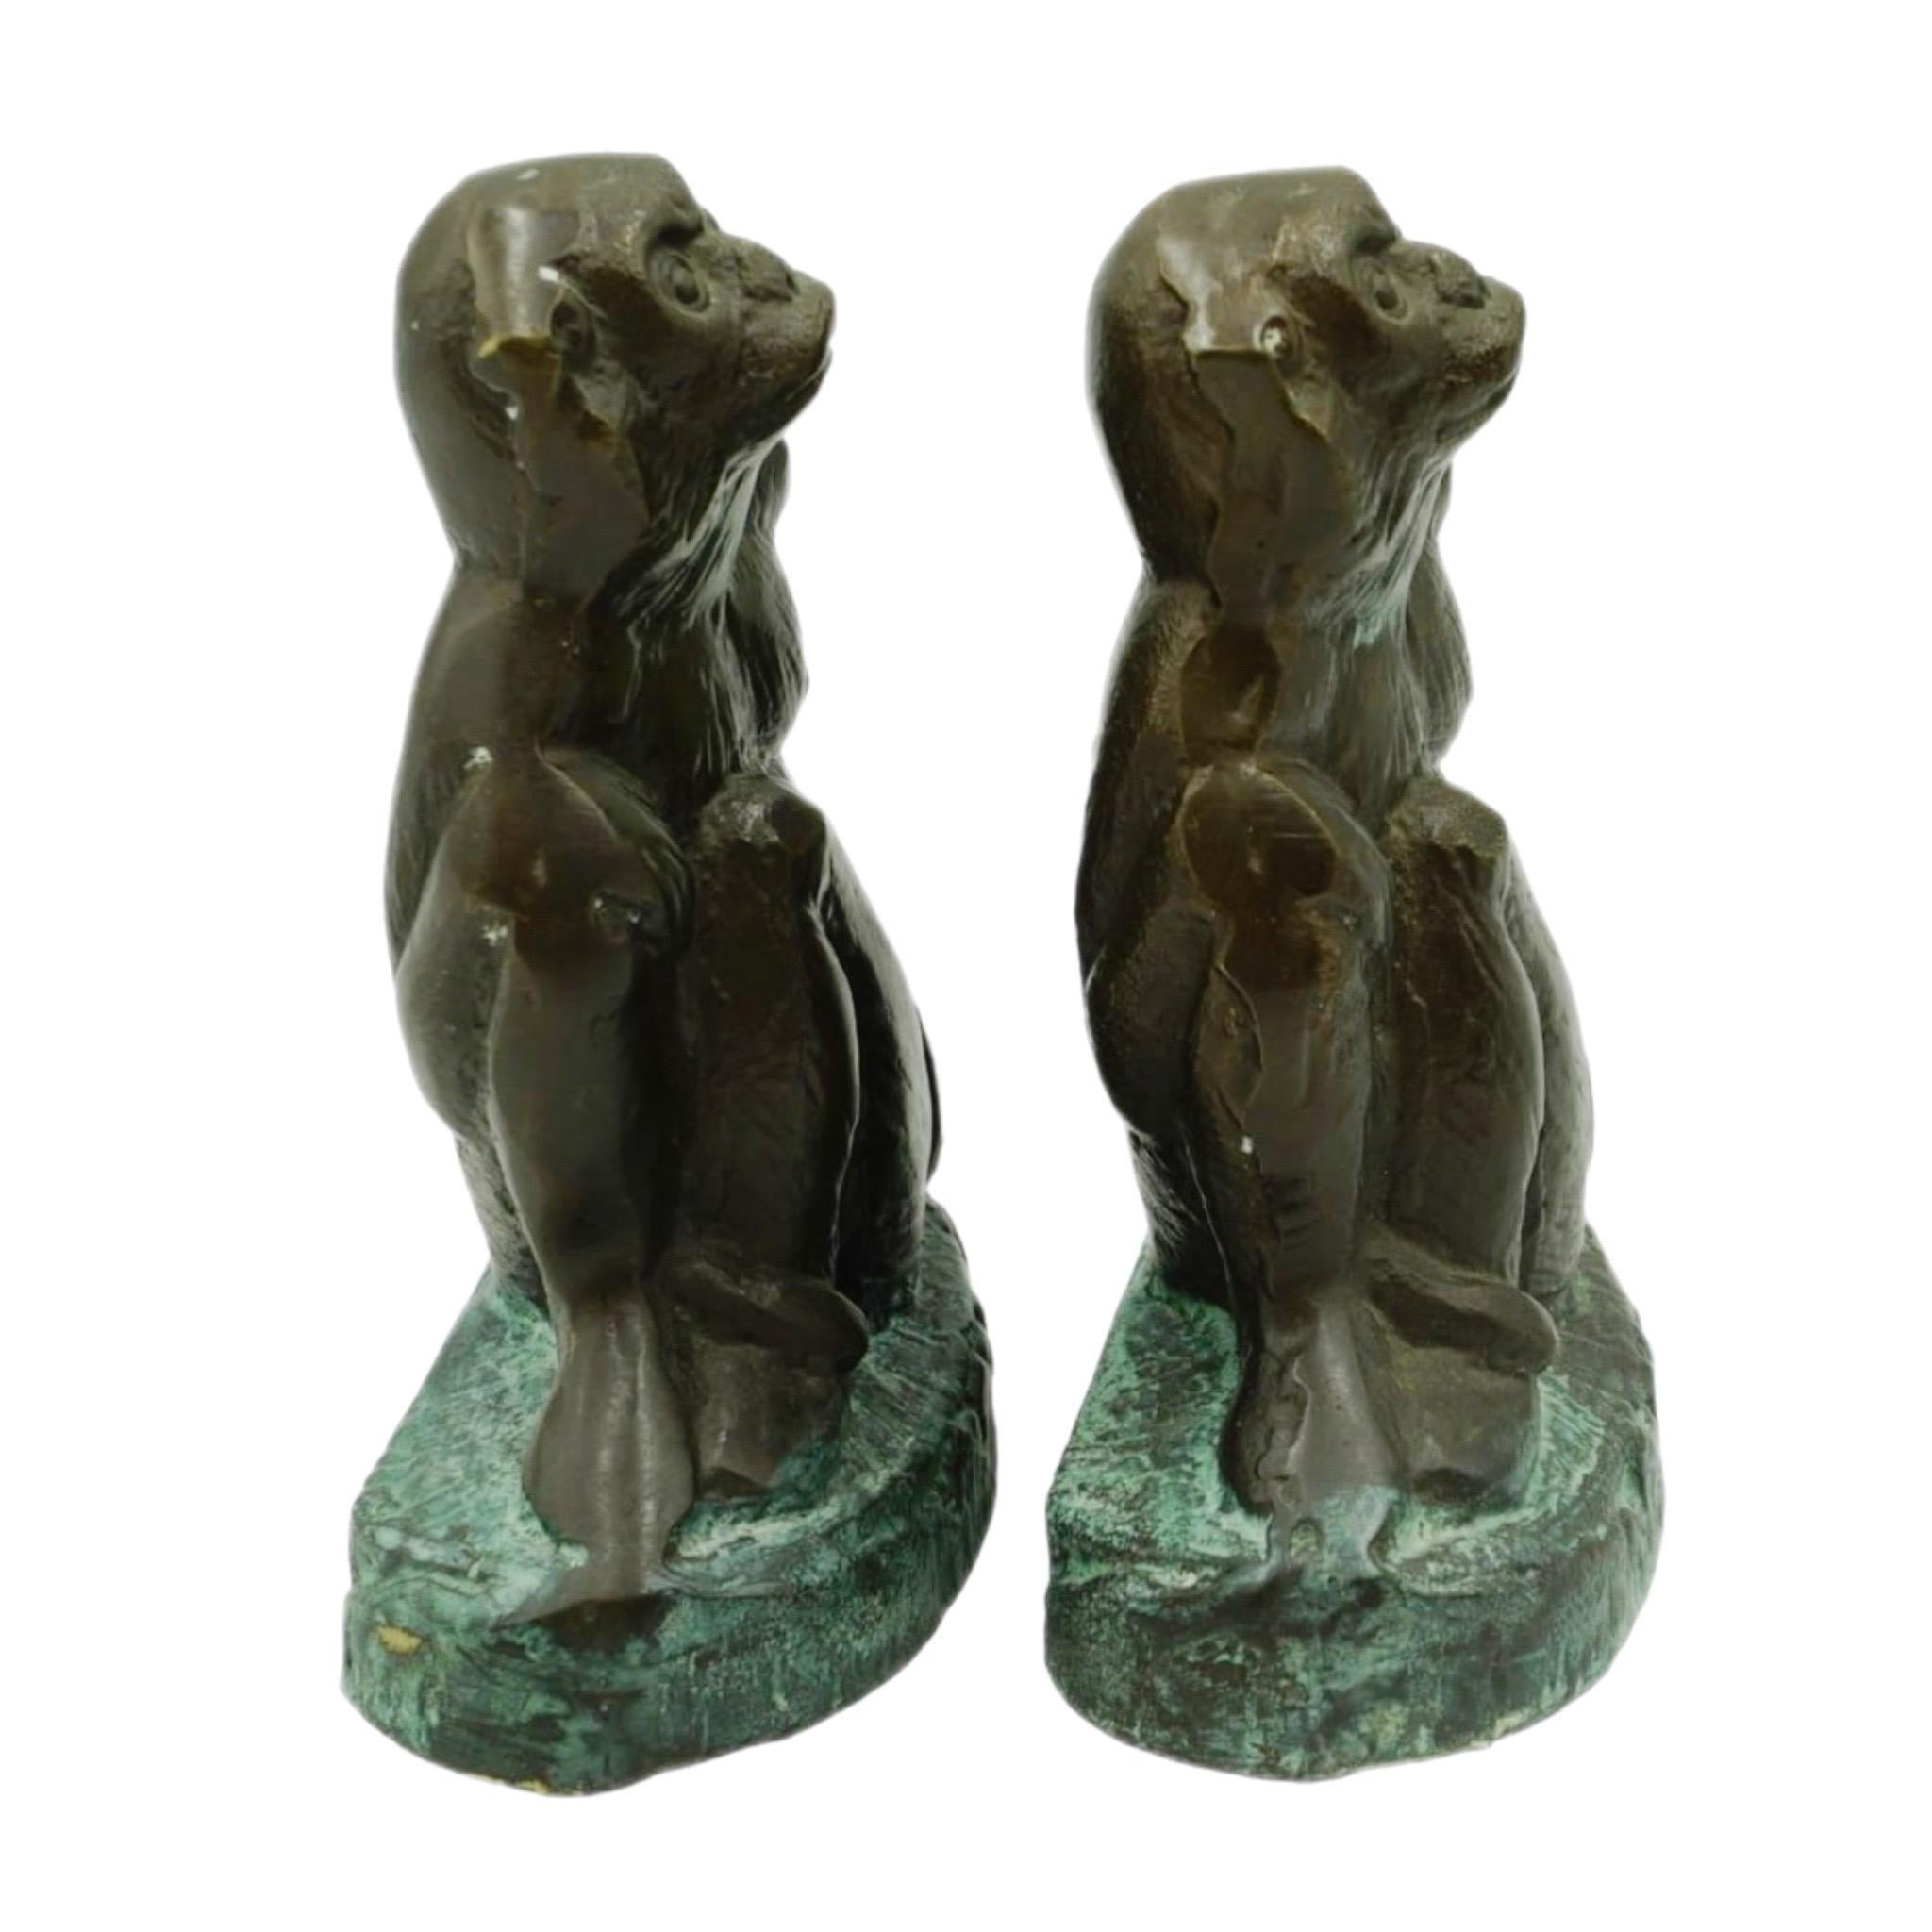 Dies ist ein Paar von Bronze Messing schweren Metall Affen Buchstützen. Das Finish ist eine antike Bronze-Patina mit Grünspan-Akzenten. Jeder Affe misst 6 Zoll hoch und 4,5 Zoll breit und ist 2,5 Zoll tief. Das Paar ist in ausgezeichnetem Zustand